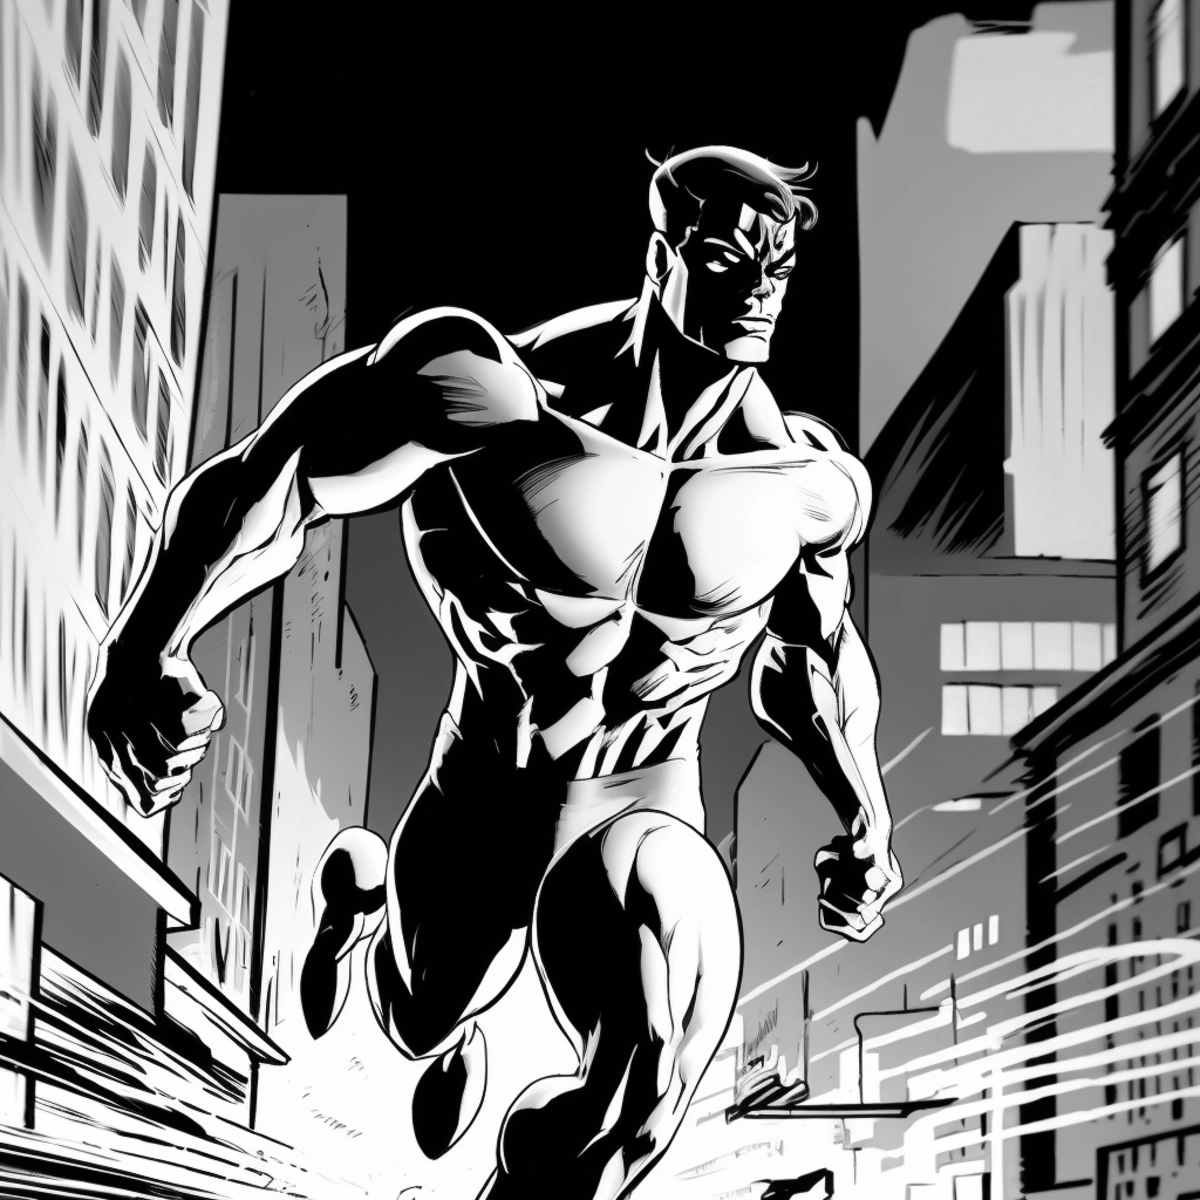 Une illustration dynamique de style bande dessinée d'un super-héros sautant dans l'action, avec un paysage urbain en arrière-plan